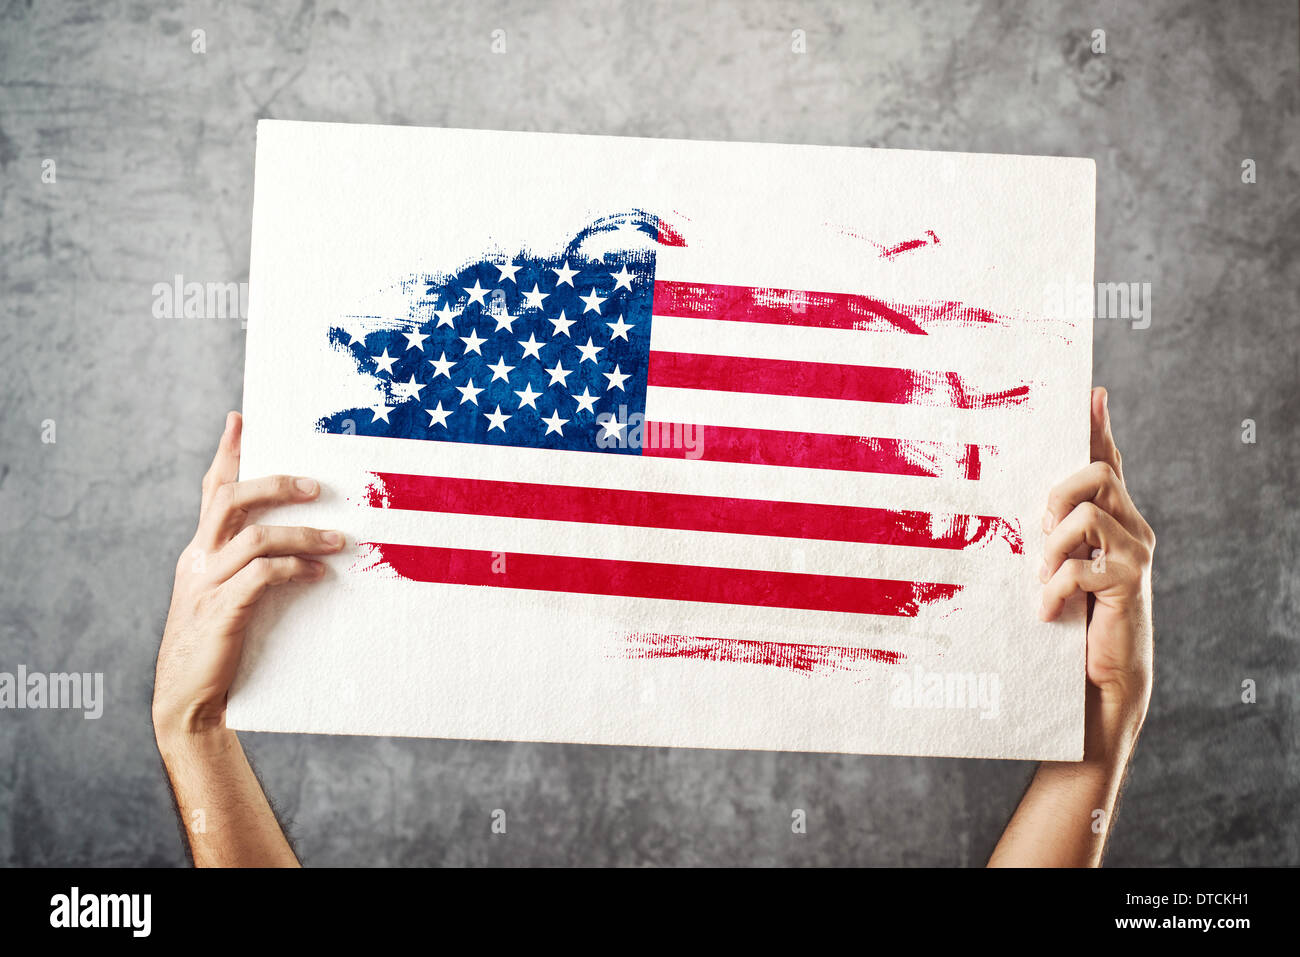 Amerikanische Flagge. Mann hält Banner mit USA-Flagge. Nationalmannschaft, Patriotismus Konzept zu unterstützen. Stockfoto